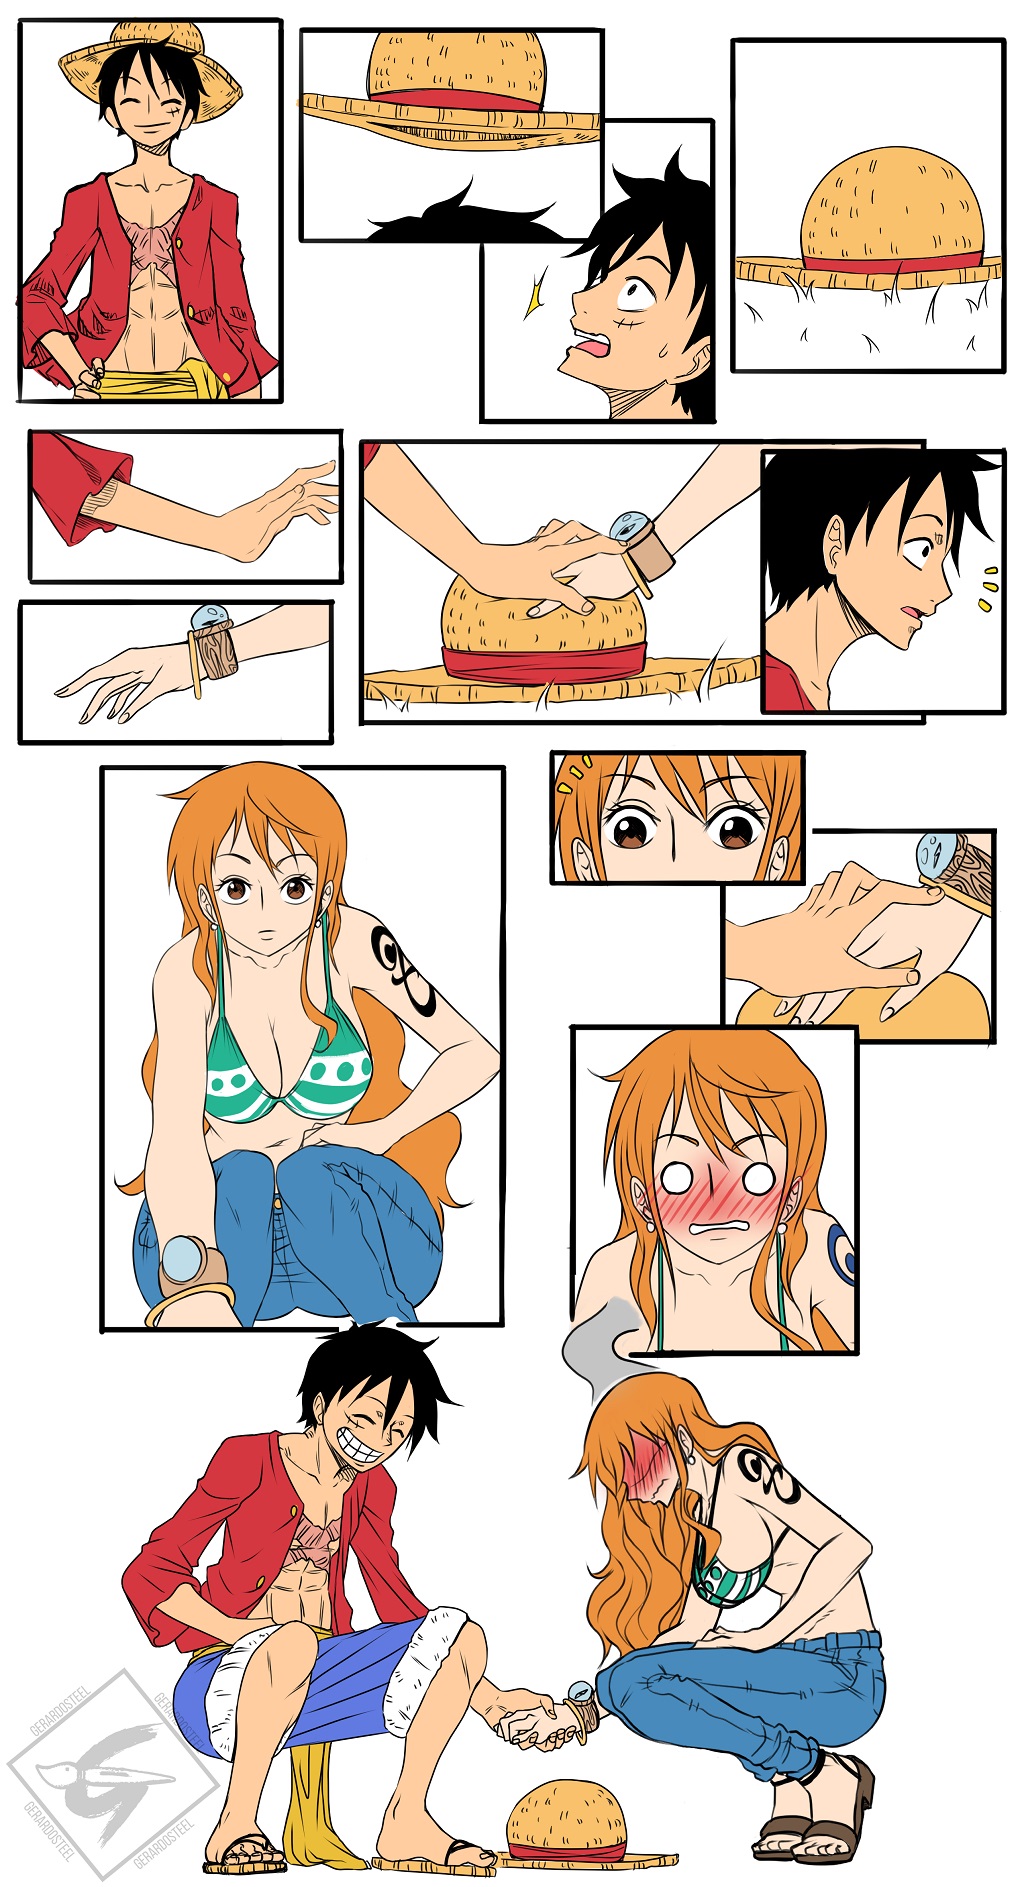 Nisekoi x One Piece by Otar3000 on DeviantArt